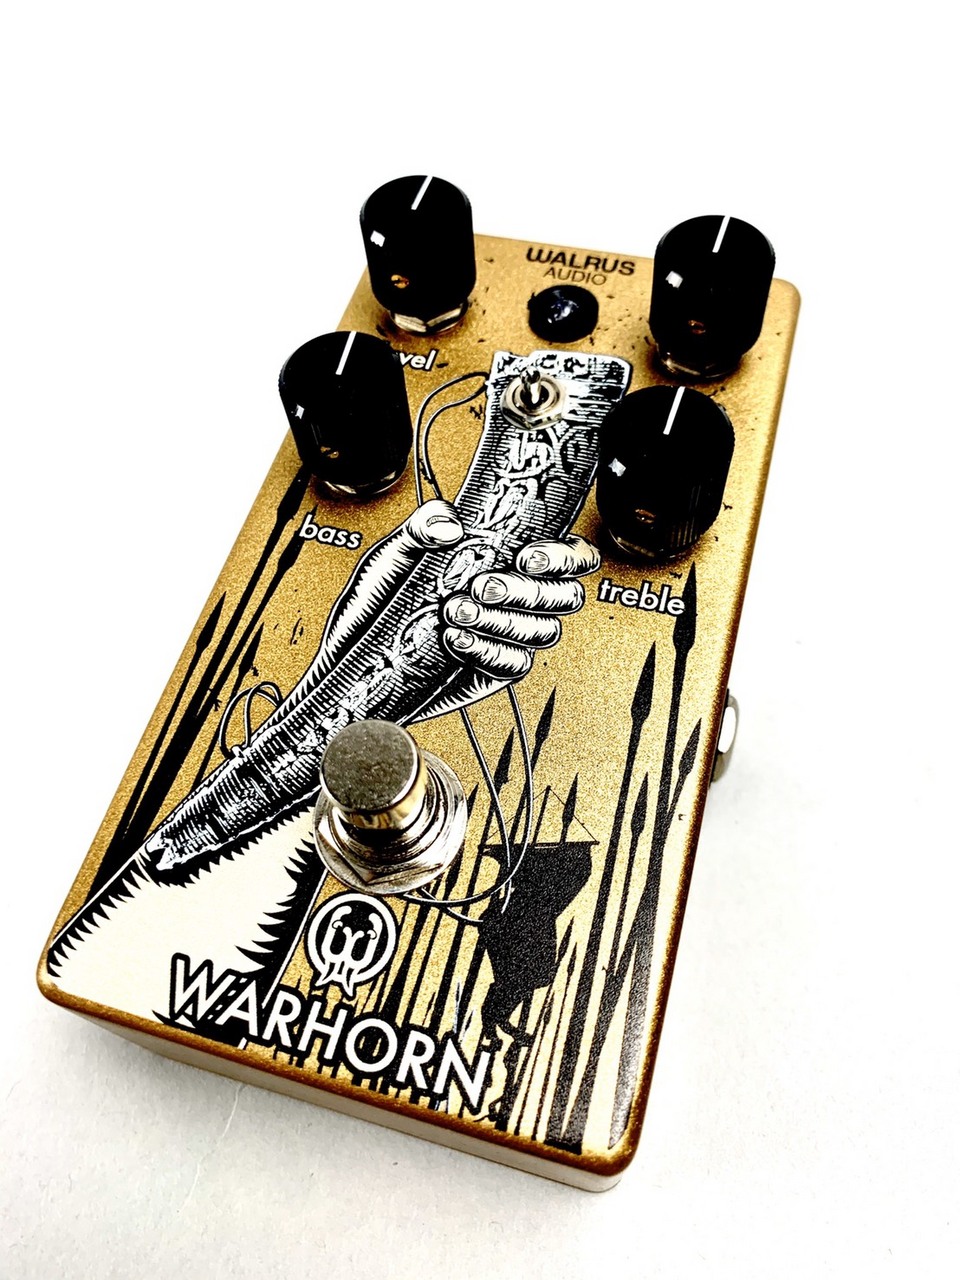 Warlus Audio Warhorn